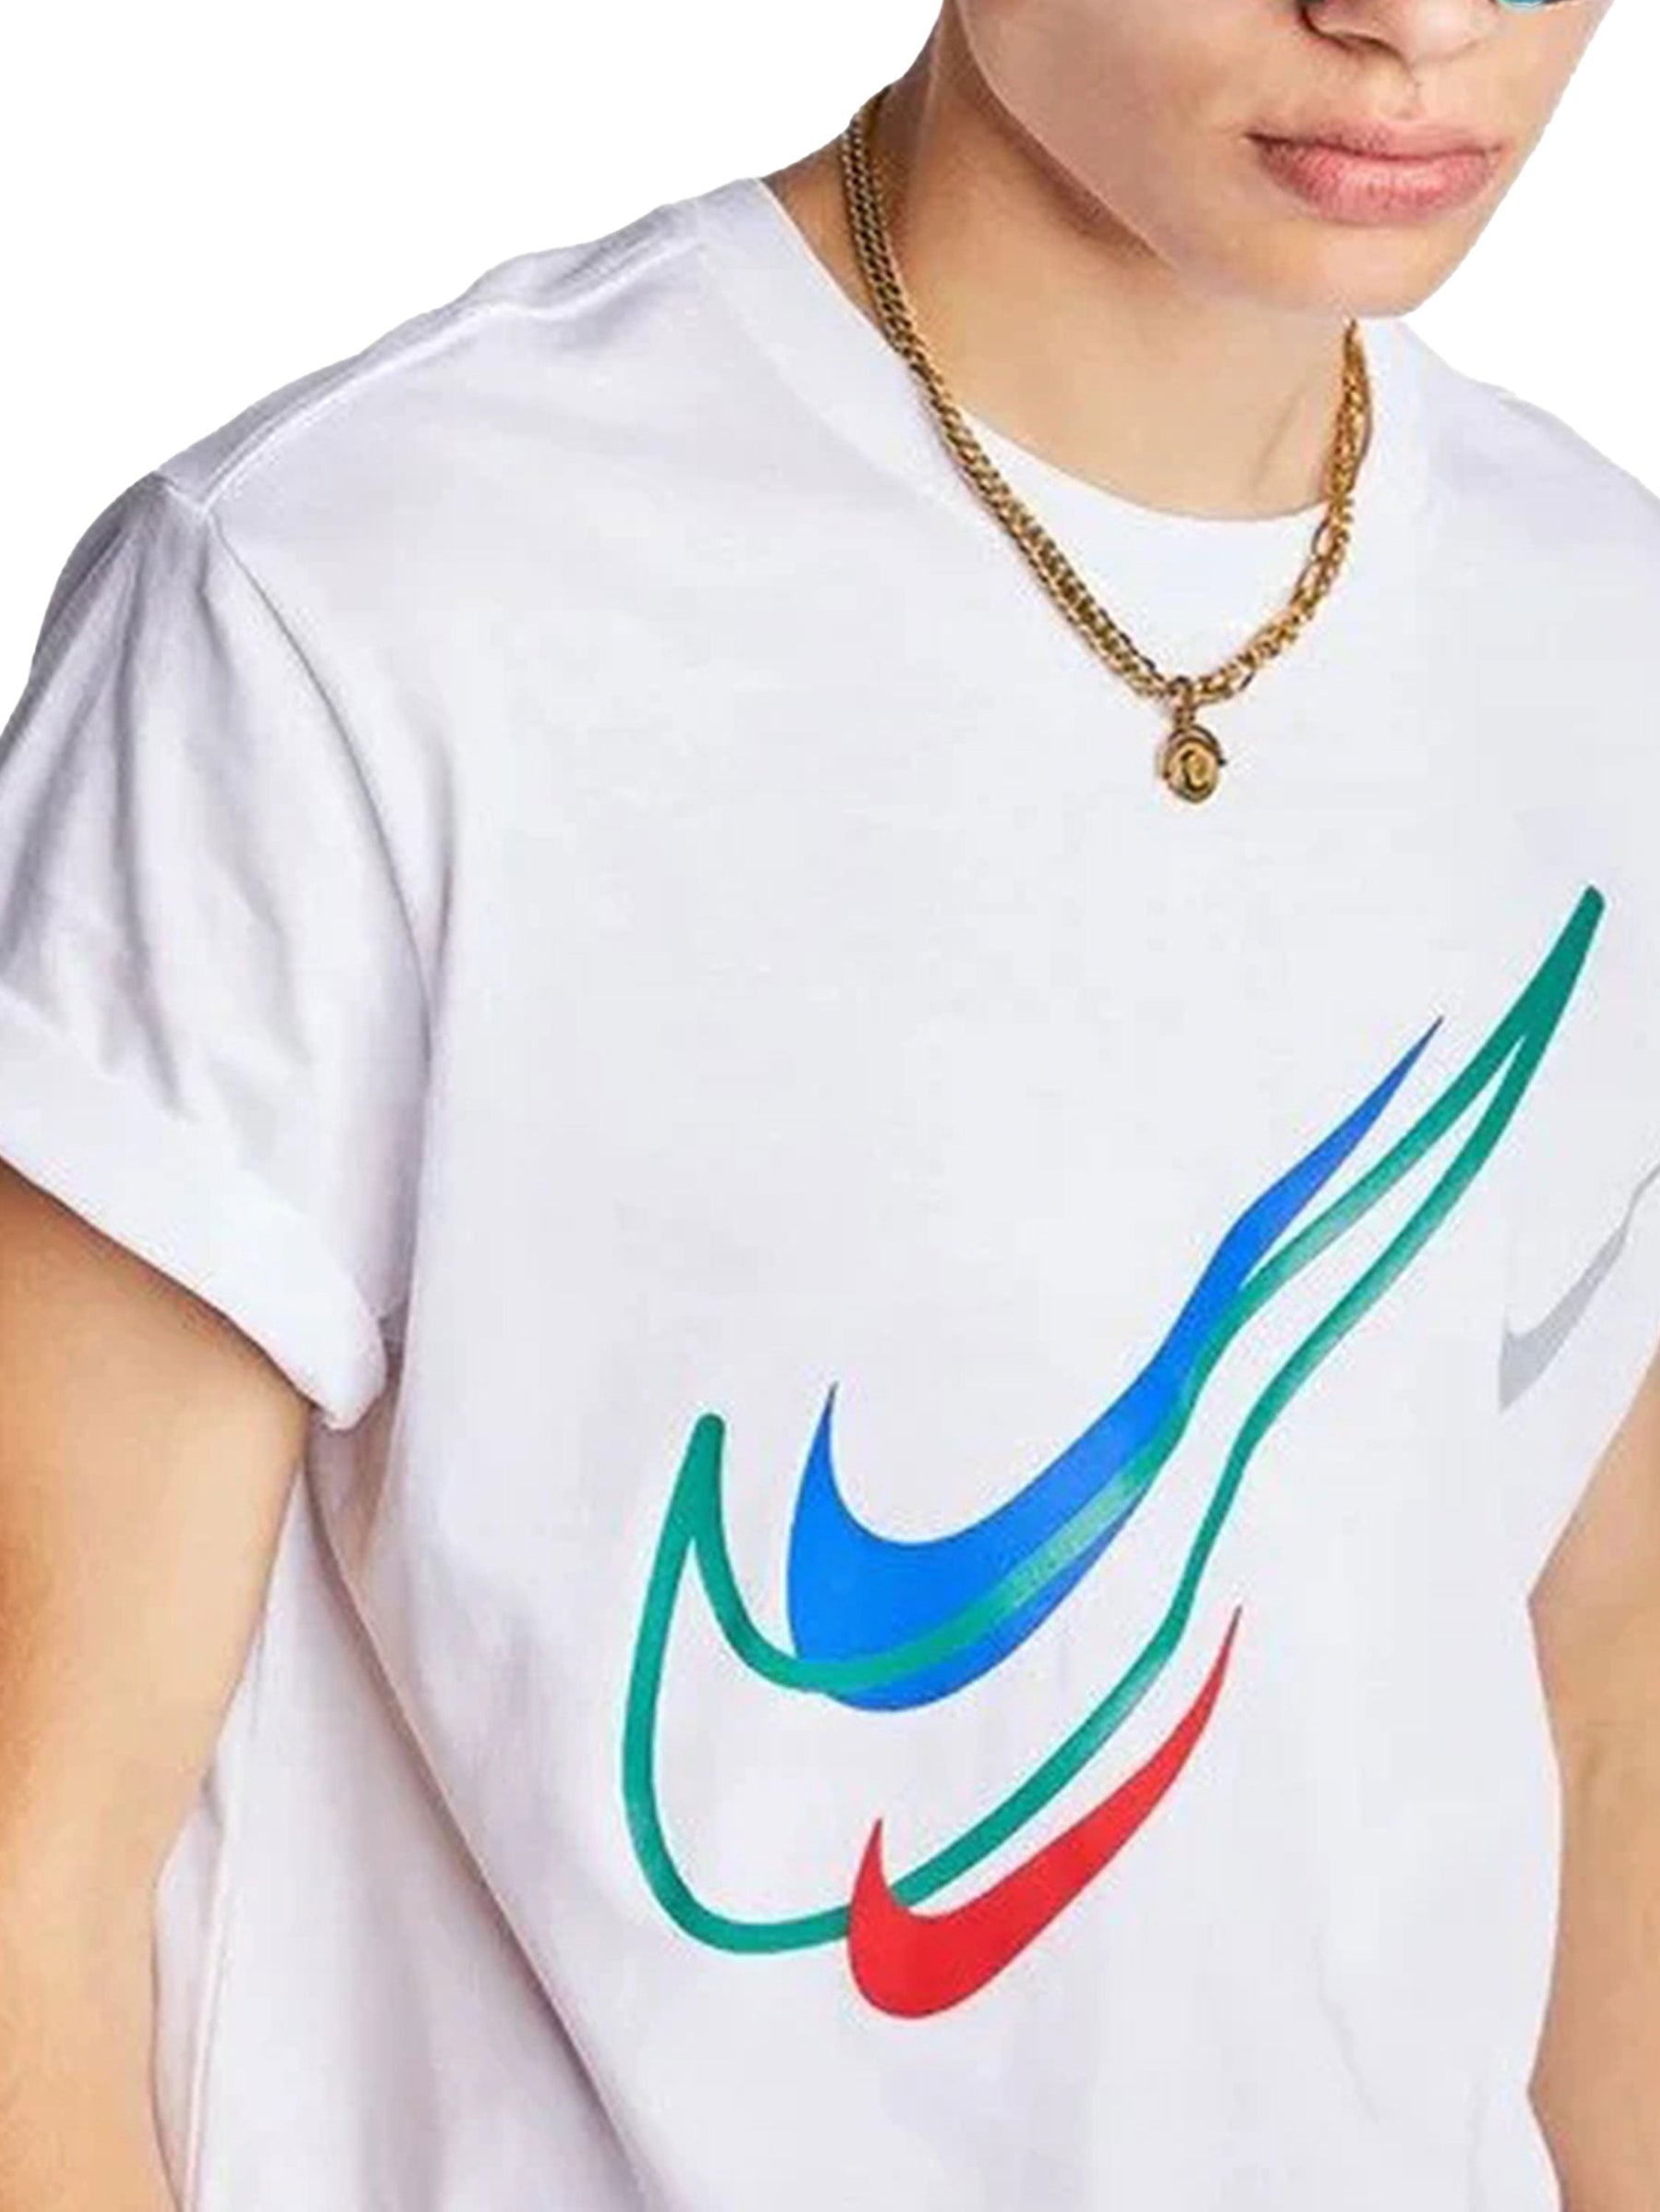 NIKE_TSHIRT_DQ3944 Copy of Nike | Mens Sportswear T-shirt NIKE RAWDENIM